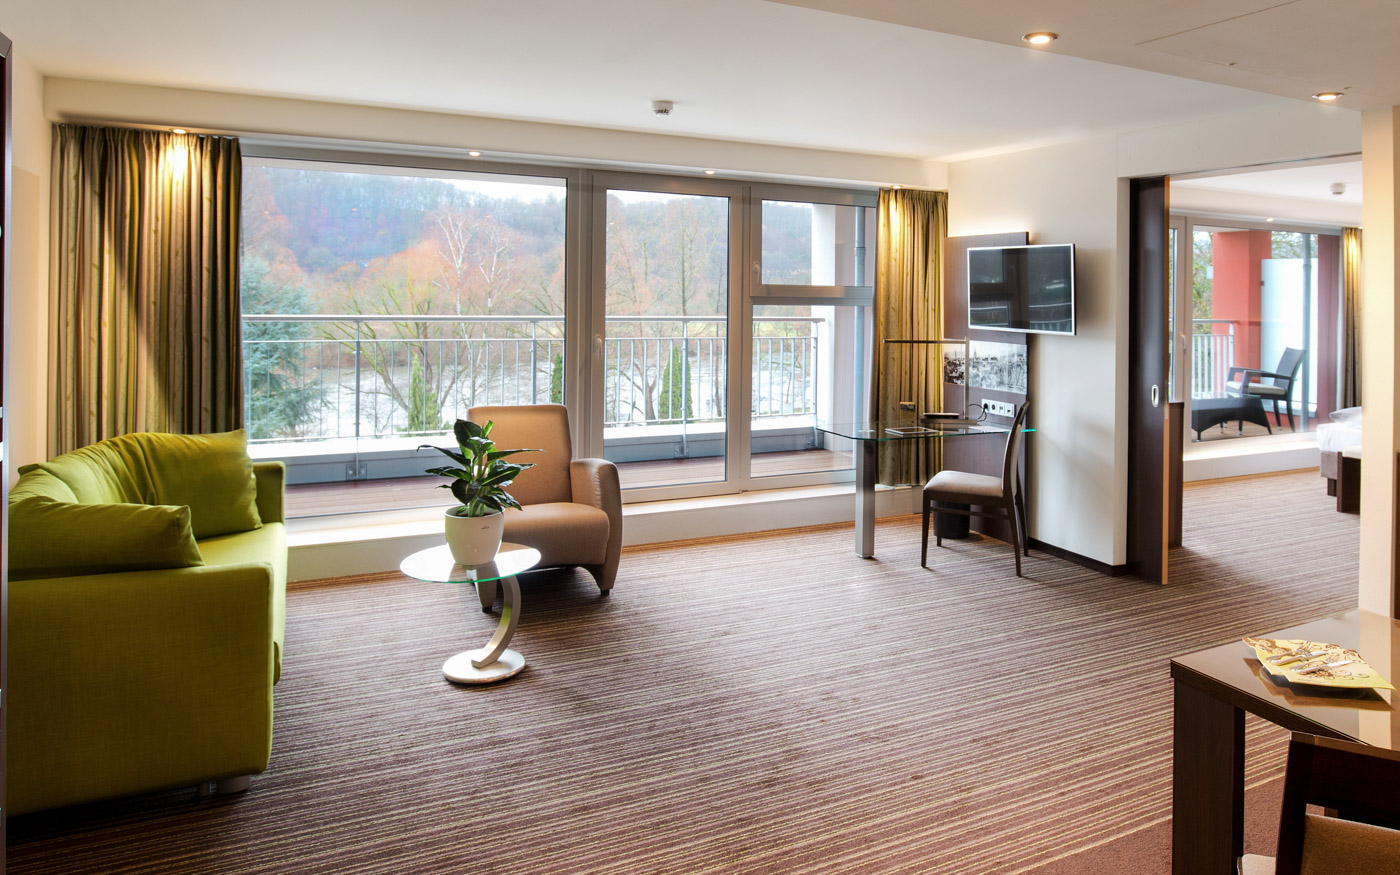 Bild der Suite (Doppelzimmer) im Riepe Hotel in Herdecke